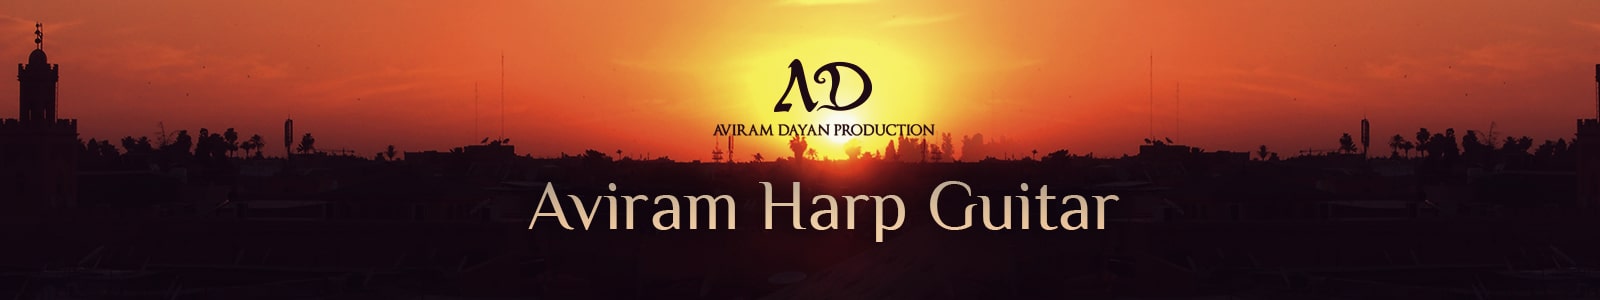 Aviram Dayan Production Aviram Harp Guitar